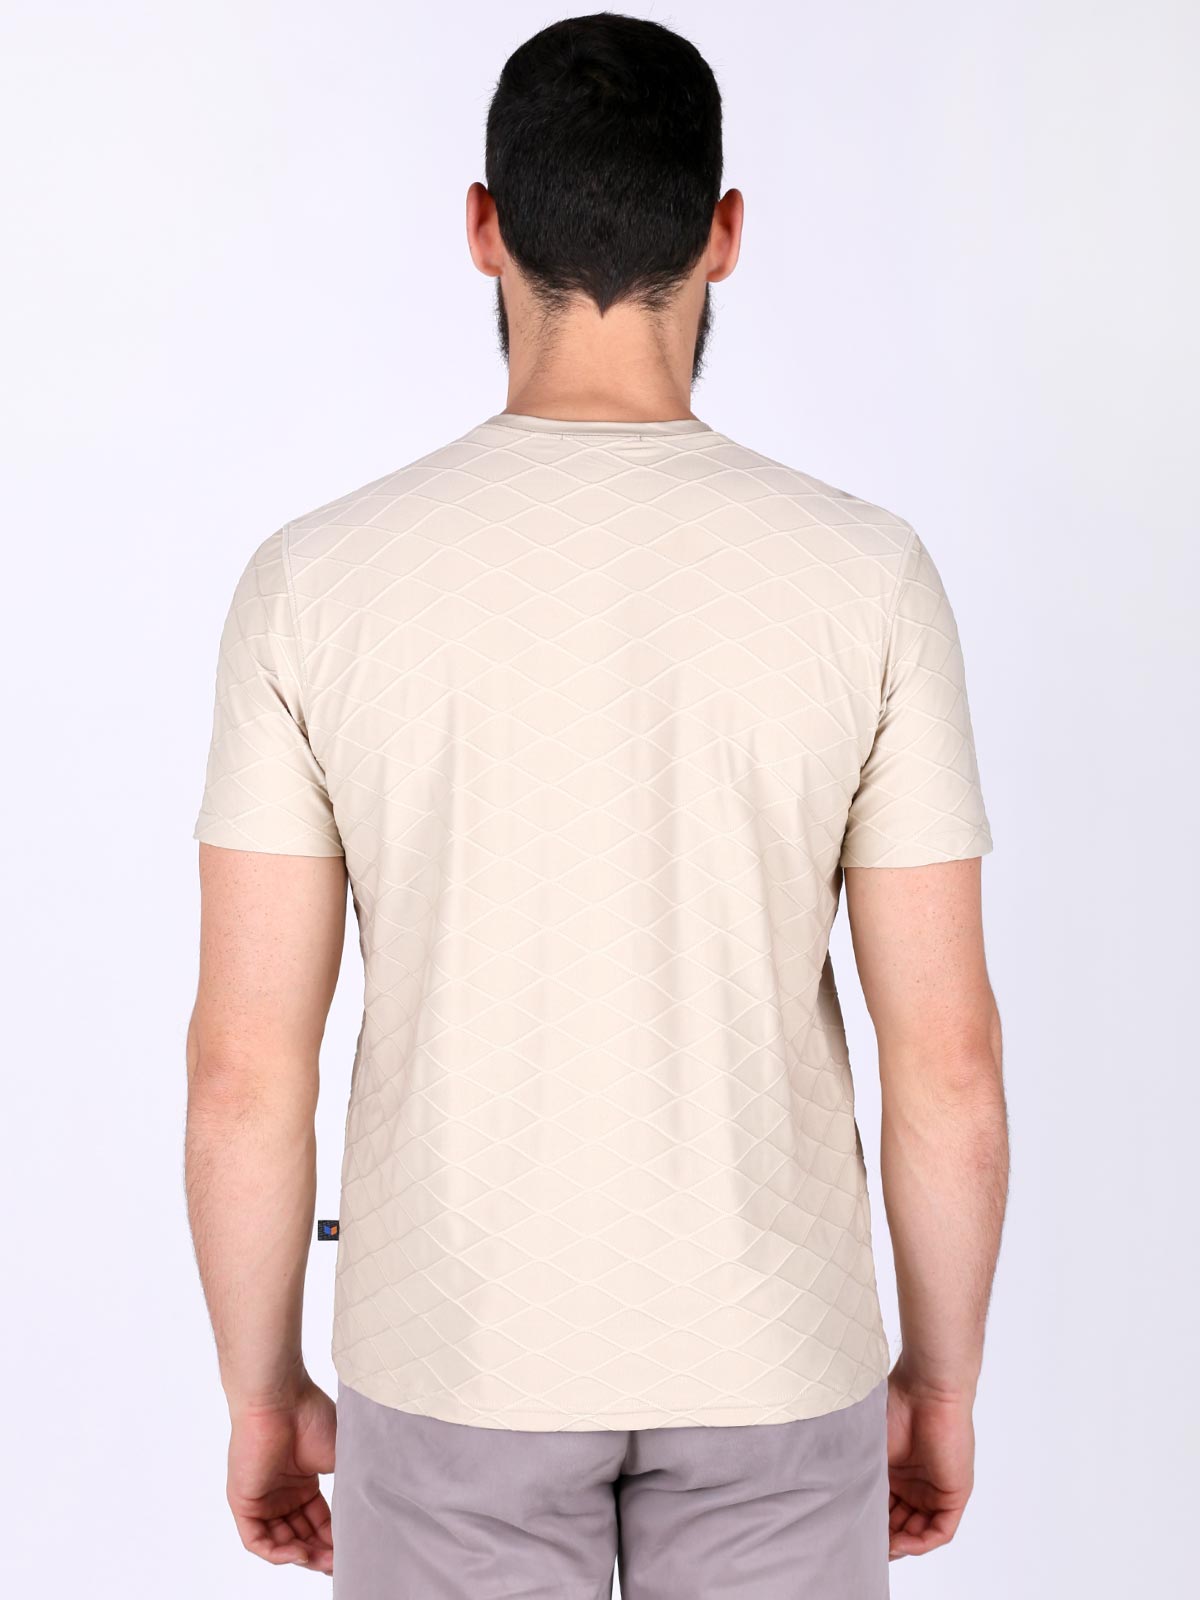  beige tshirt with rhombuses  - 88009 € 6.75 img2